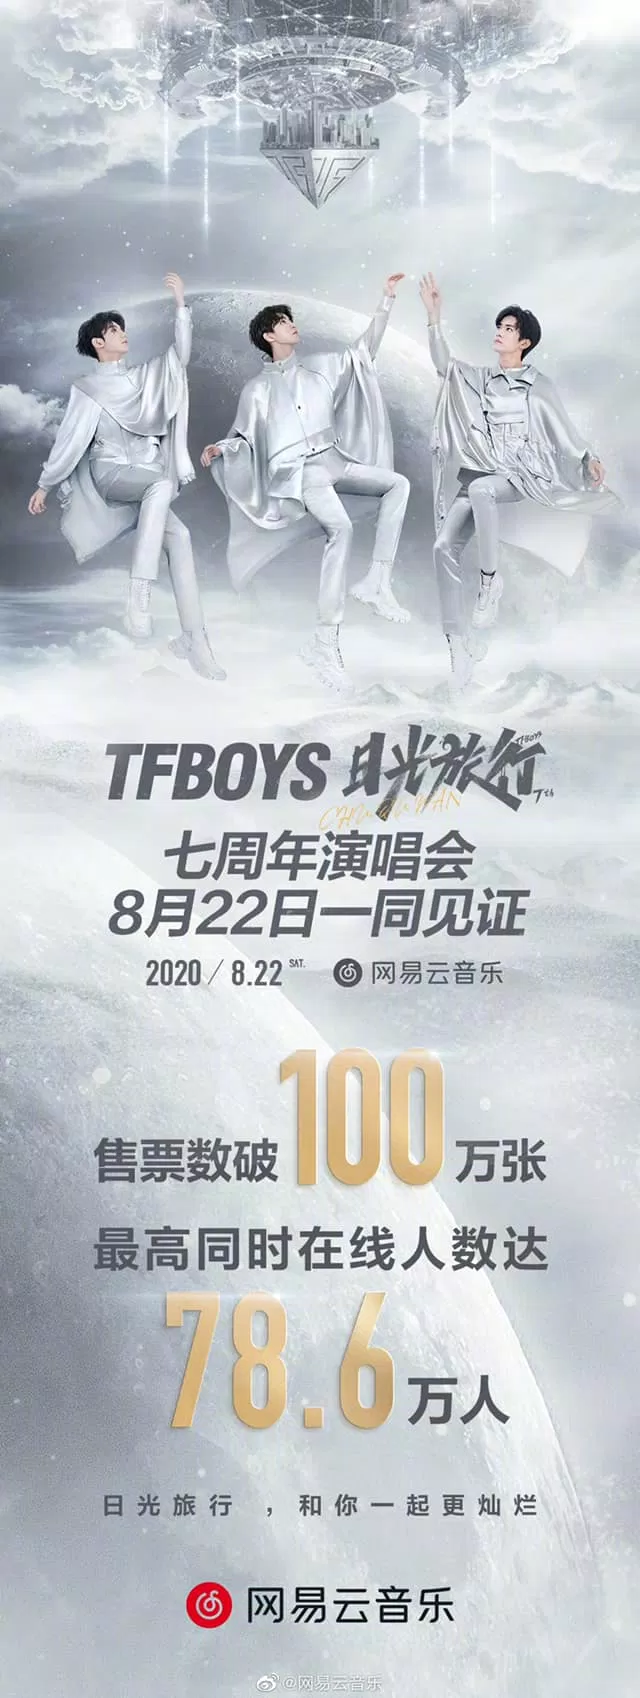 Concert của TFBOYS vượt mặt BTS: Phá vỡ kỉ lục với số người xem live cao nhất thế giới BTS CBIZ concert KPOP dịch dương thiên tỉ kỉ lục TFBOYS thế giới Vương Nguyên Vương Tuấn Khải